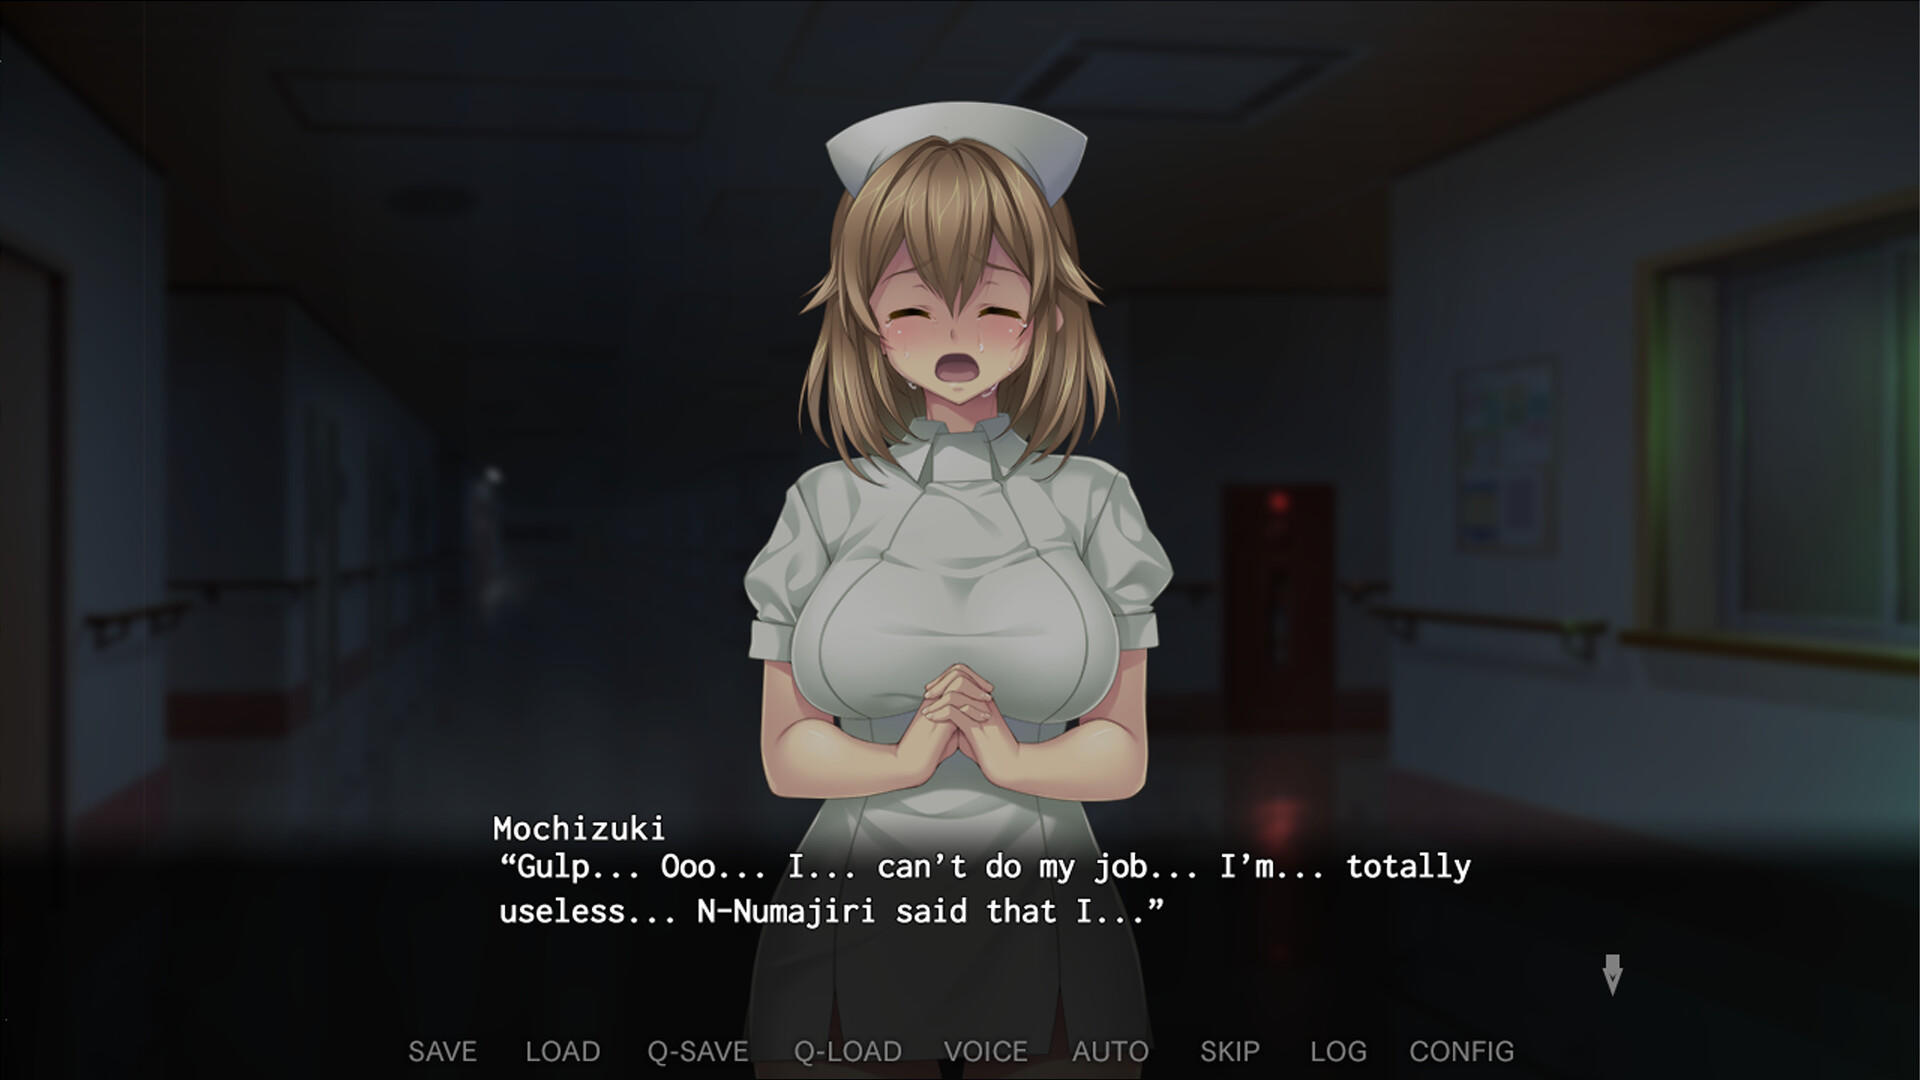 Screenshot 1 of いやいやいや看護師さん 